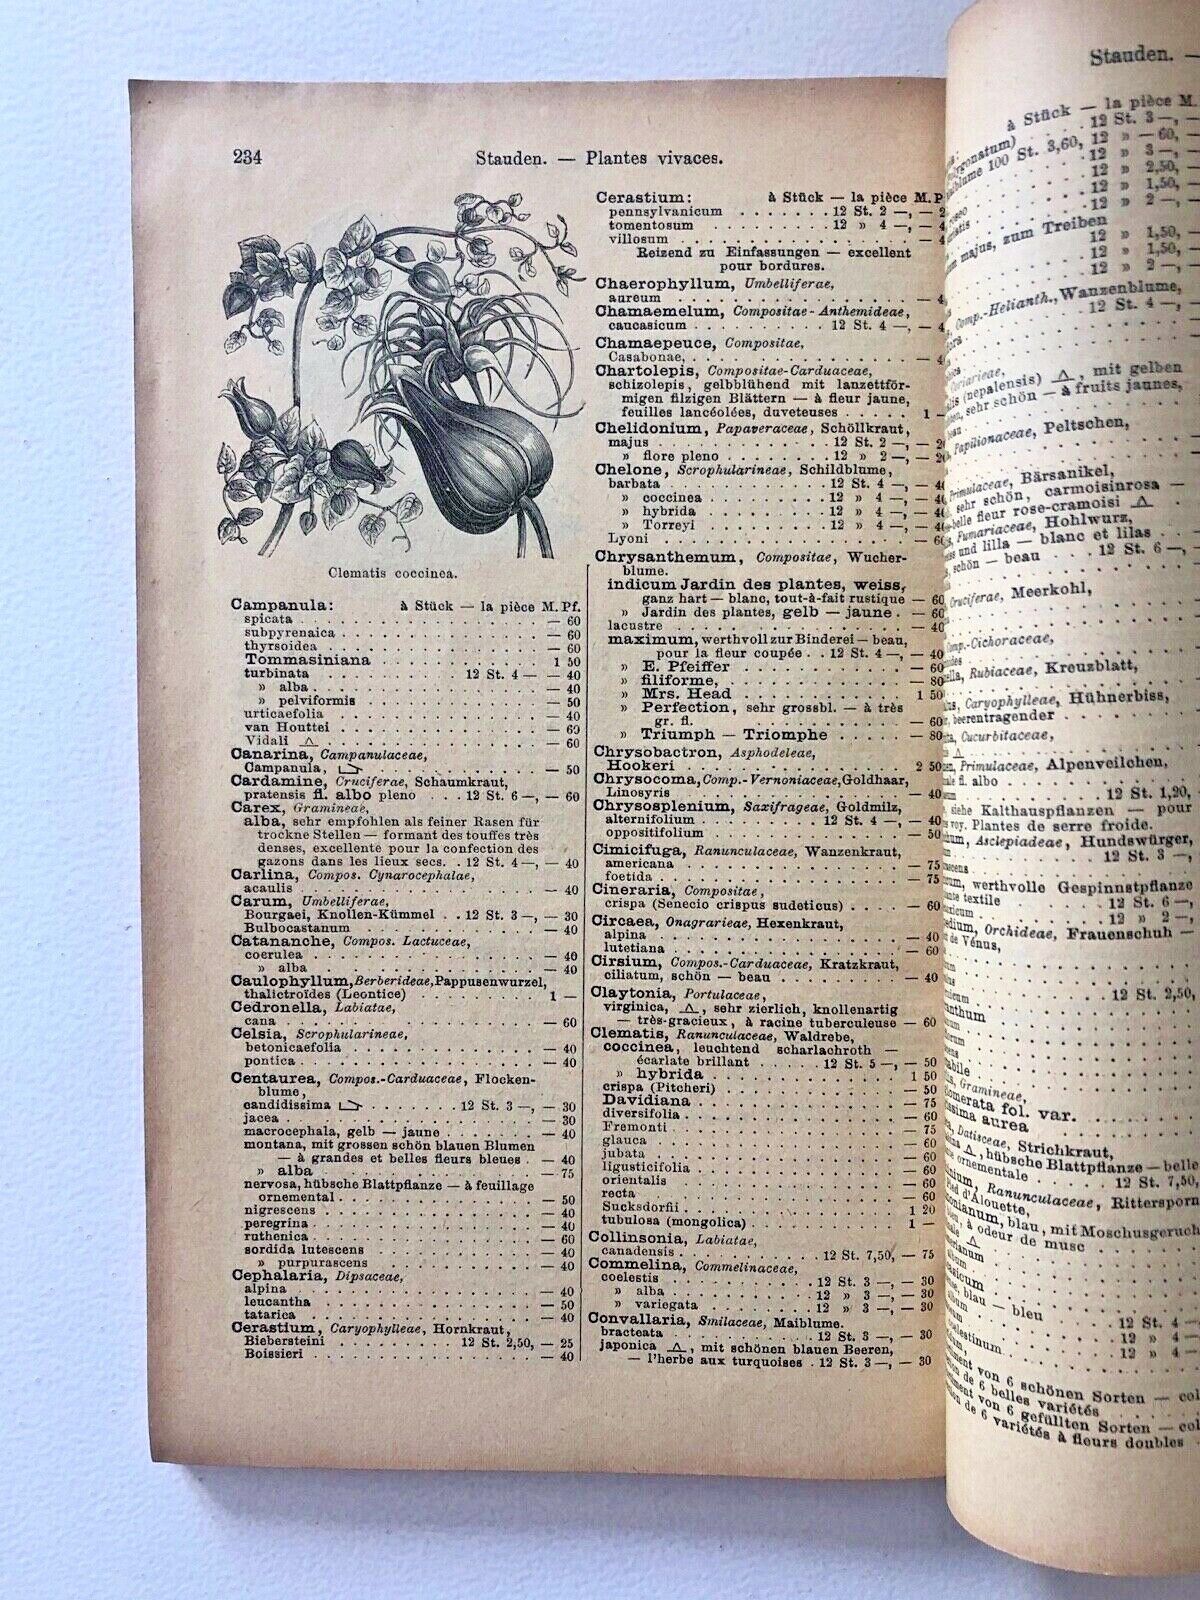 Haage & Schmidt 1901 Haupt-Verzeichniss Samen und Pflanzen